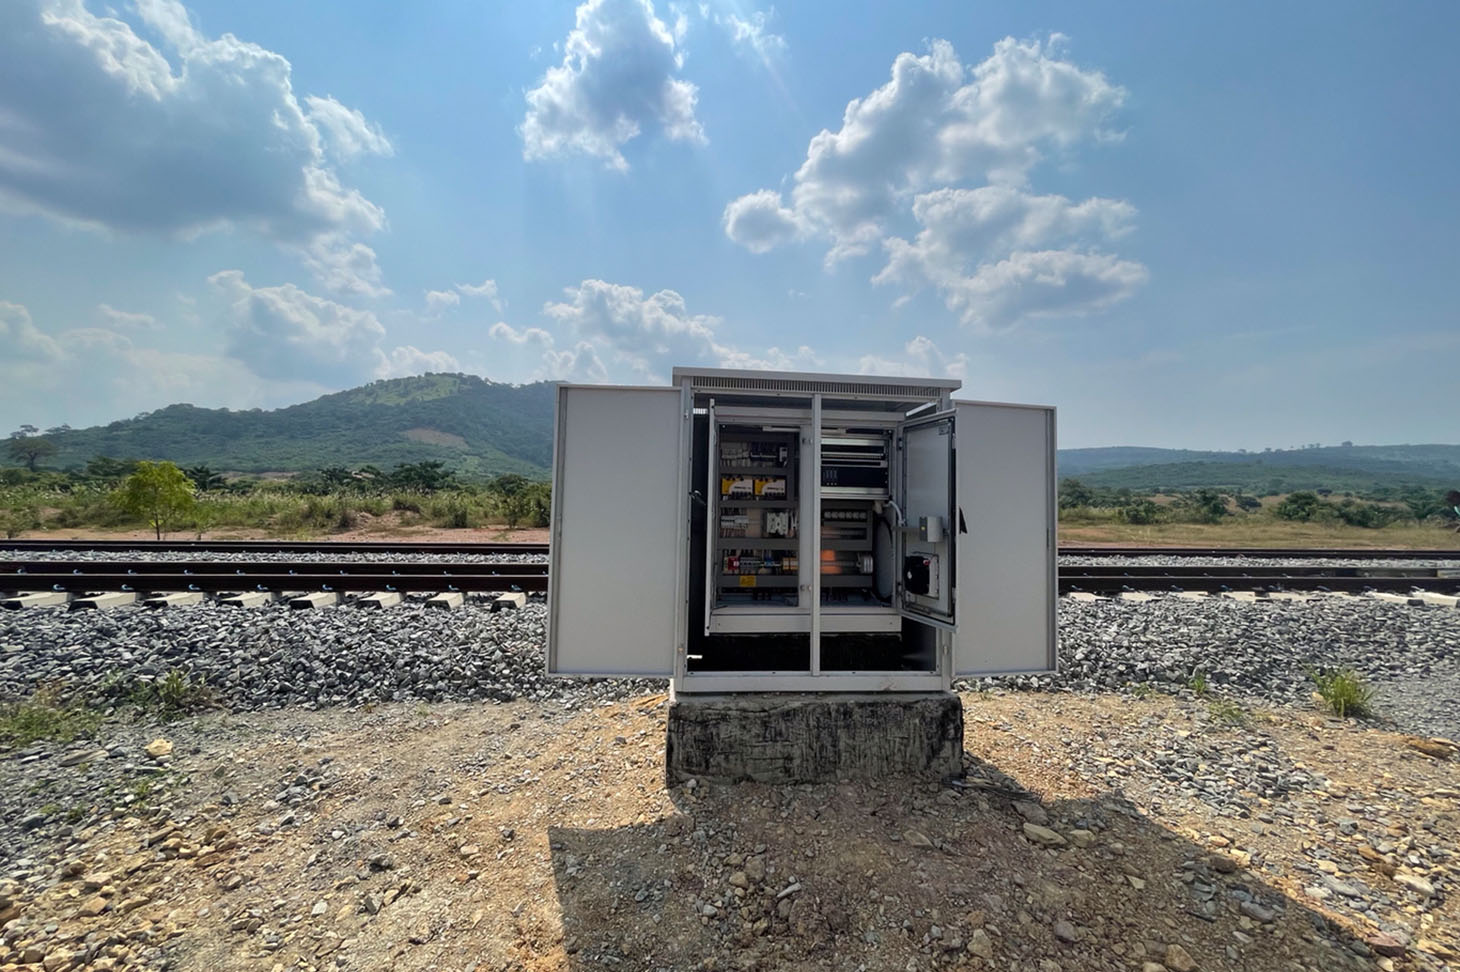 Leittechnik-Container der voestalpine Railway Systems Group neben einer Eisenbahn in Afrika.